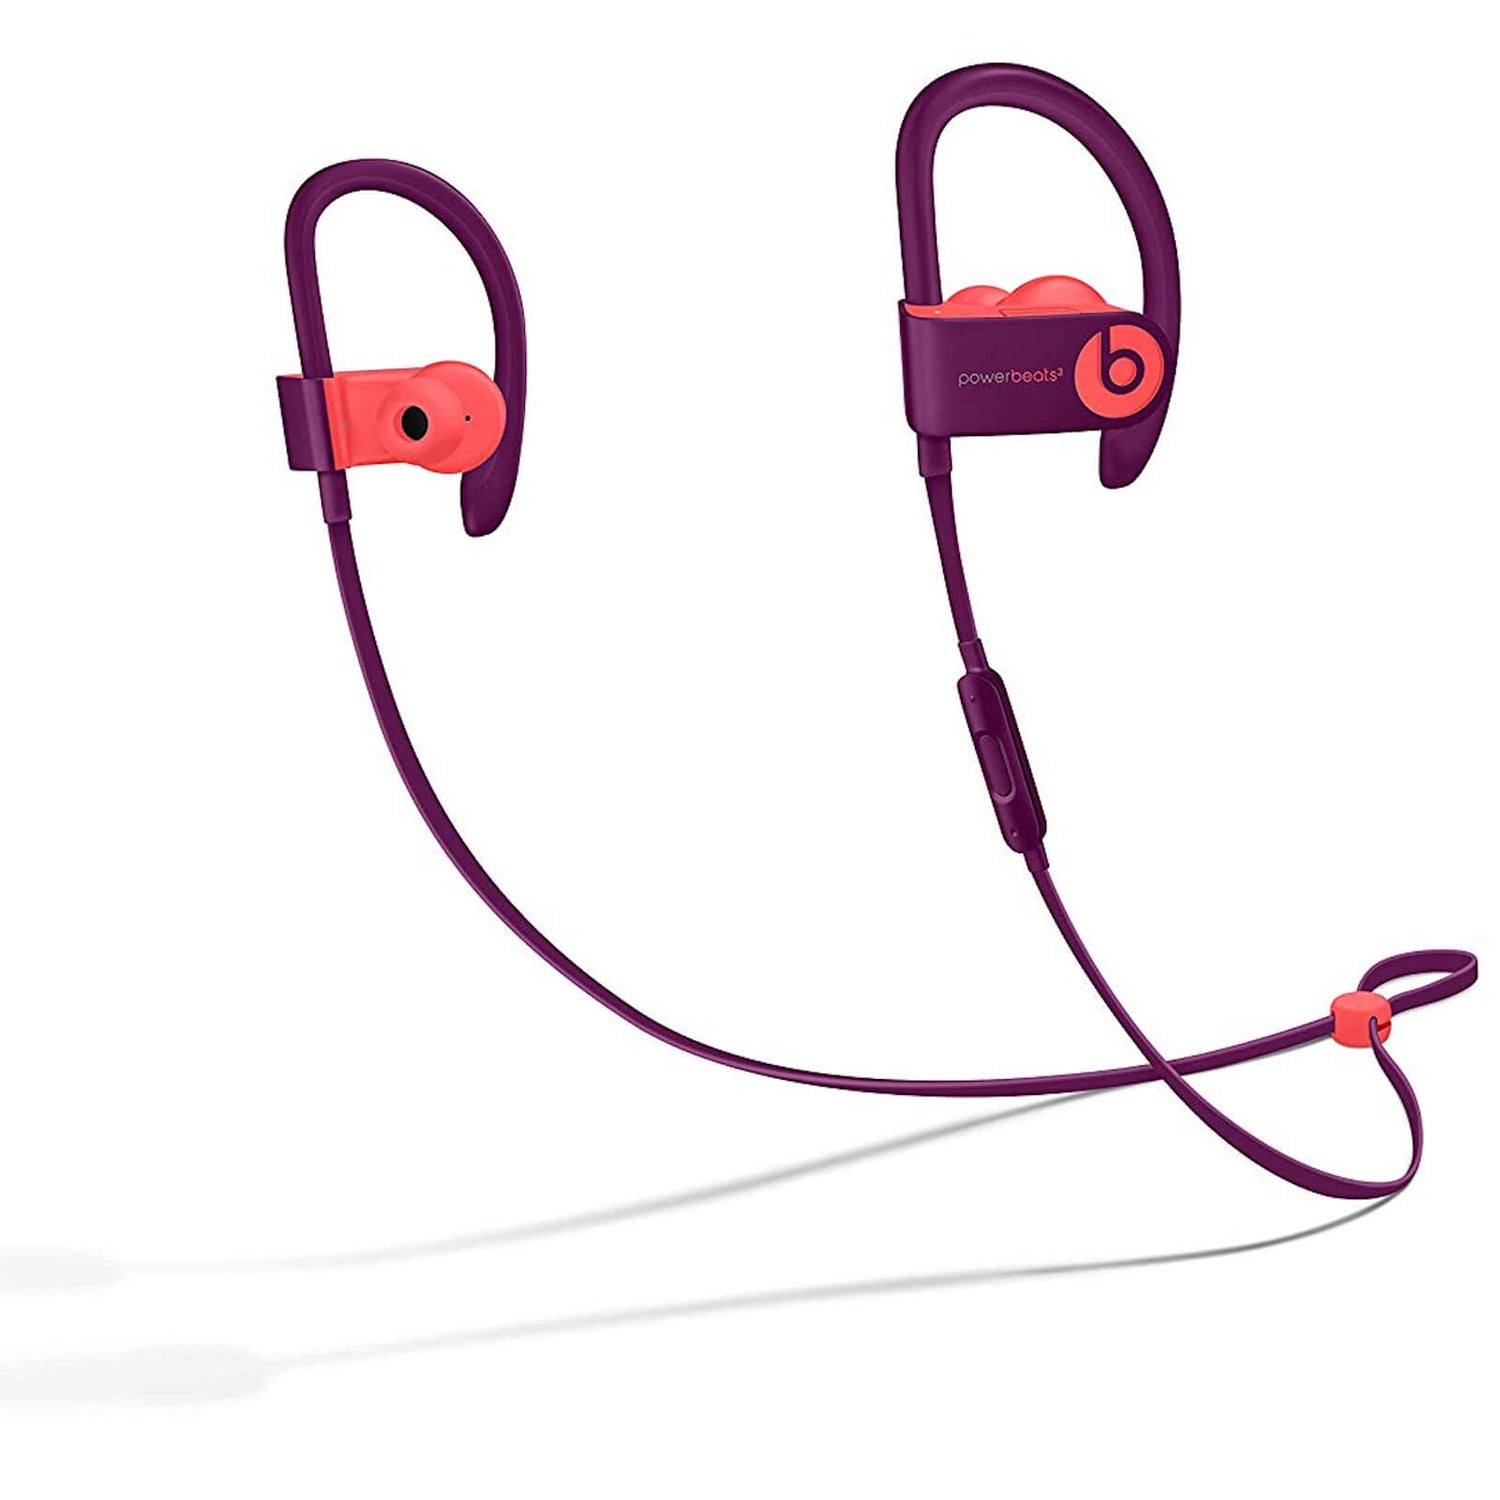 Beats by Dr. Dre Powerbeats 3 Wireless In-Ear Headphones Pop